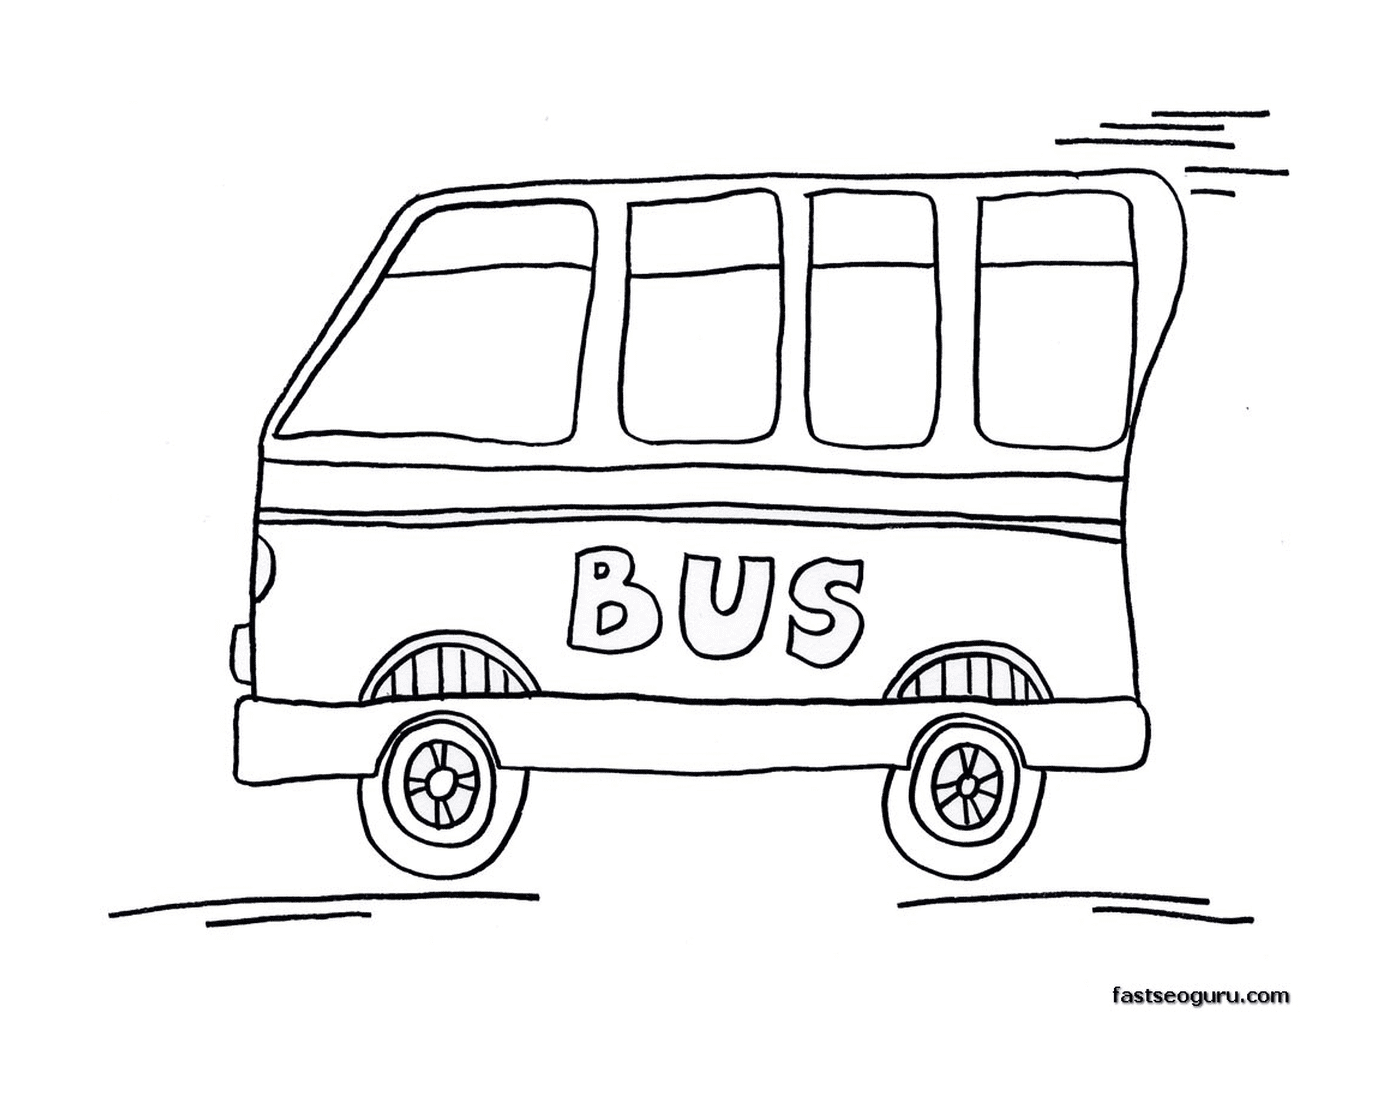  Hay un autobús en el camino 